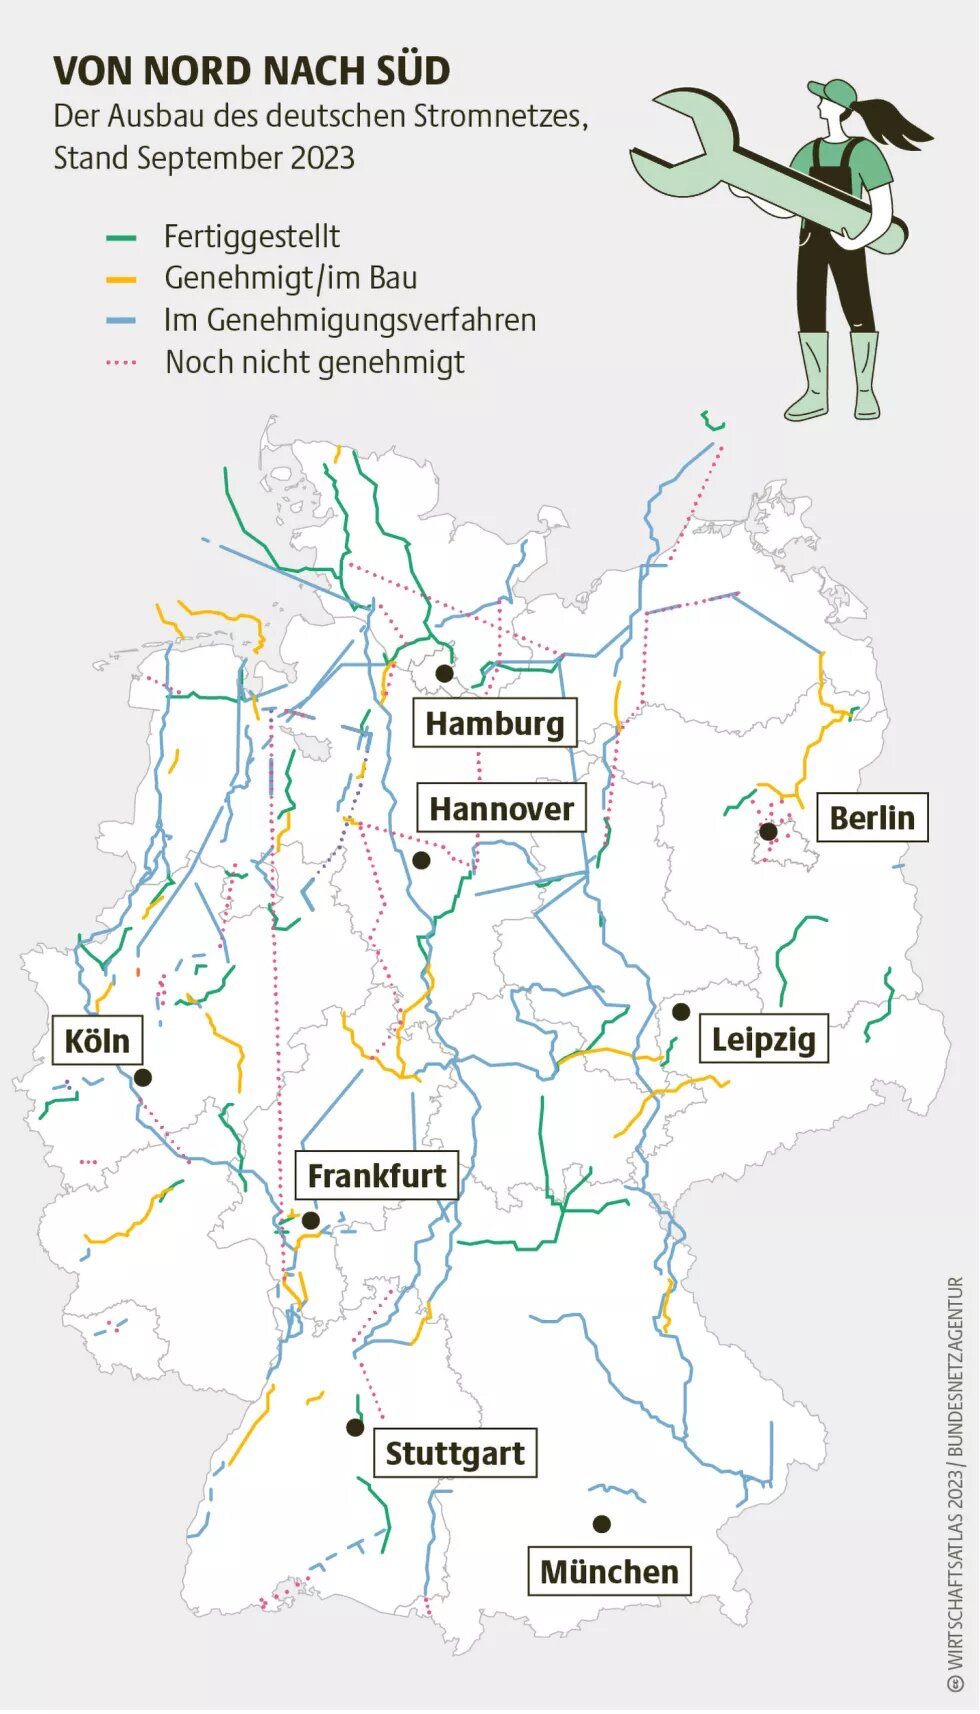 Der Ausbau des deutschen Stromnetzes, Stand September 2023